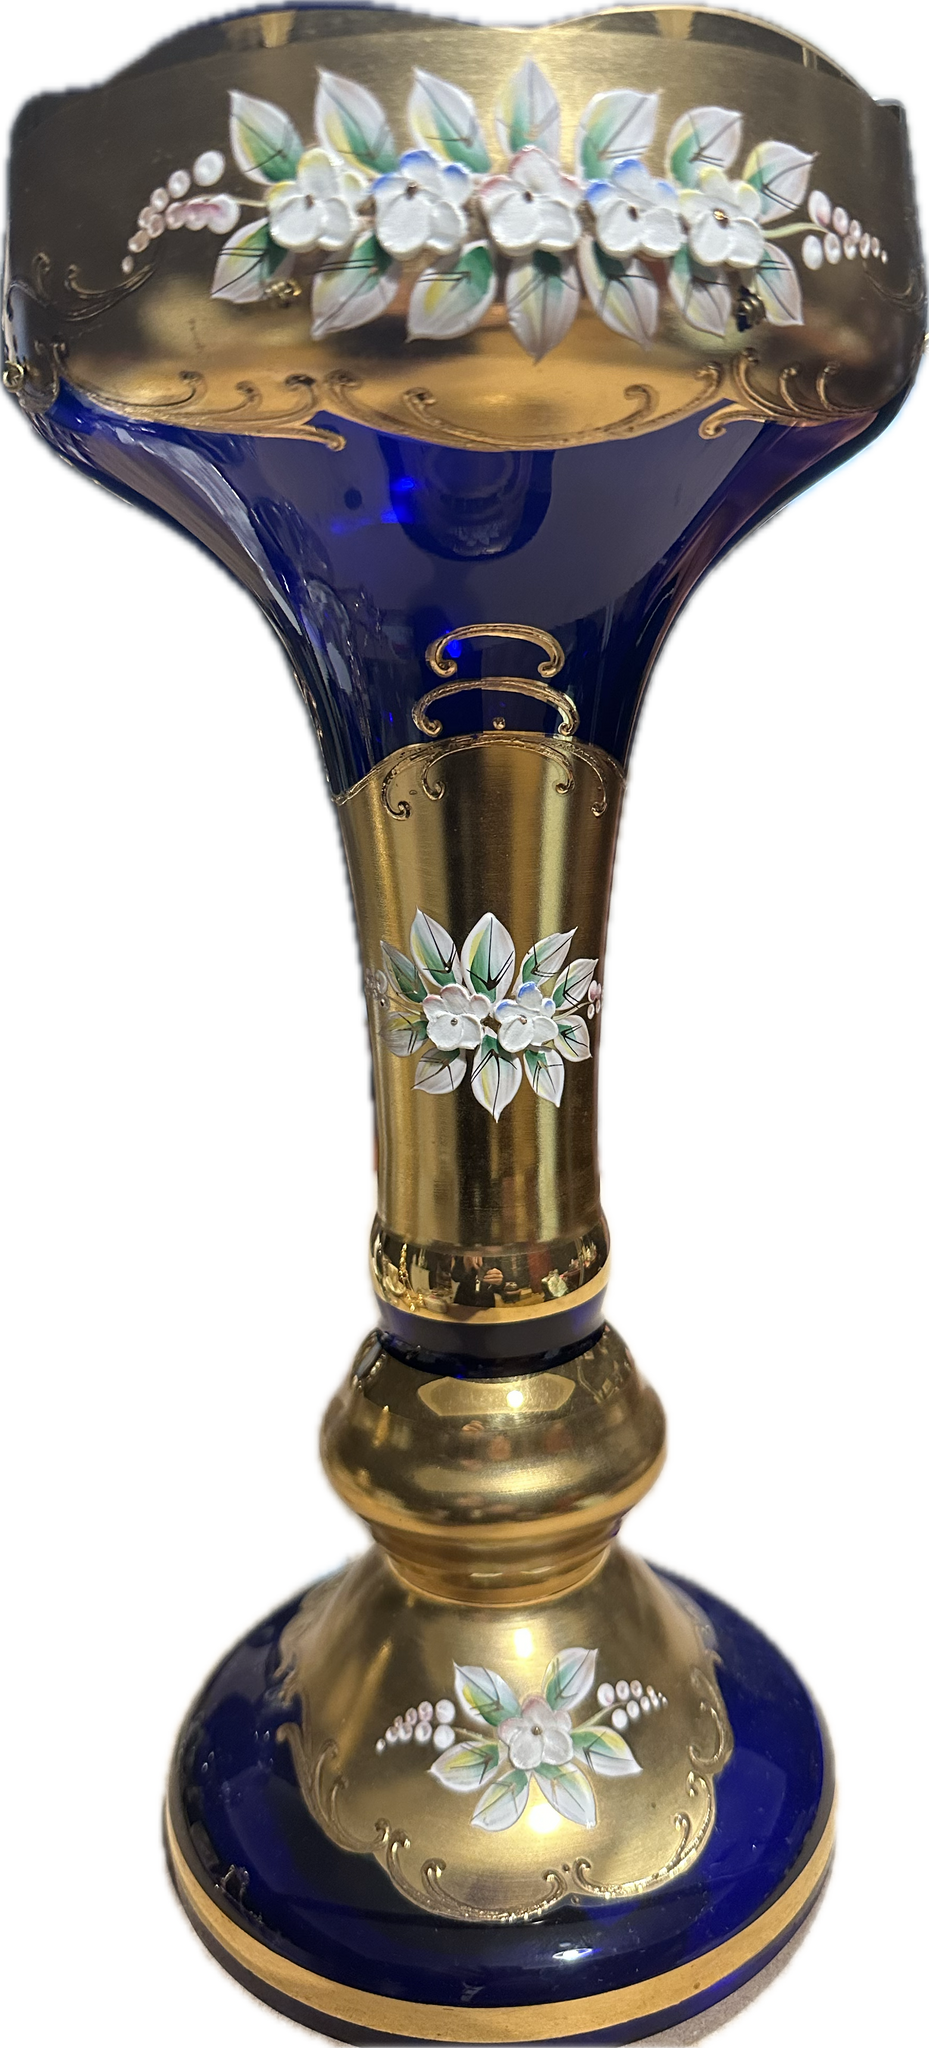 Çek Bohemia kristal mineli çiçekli altın yaldızlı tamamı el yapımı cam ayaklı mavi lacivert vazo